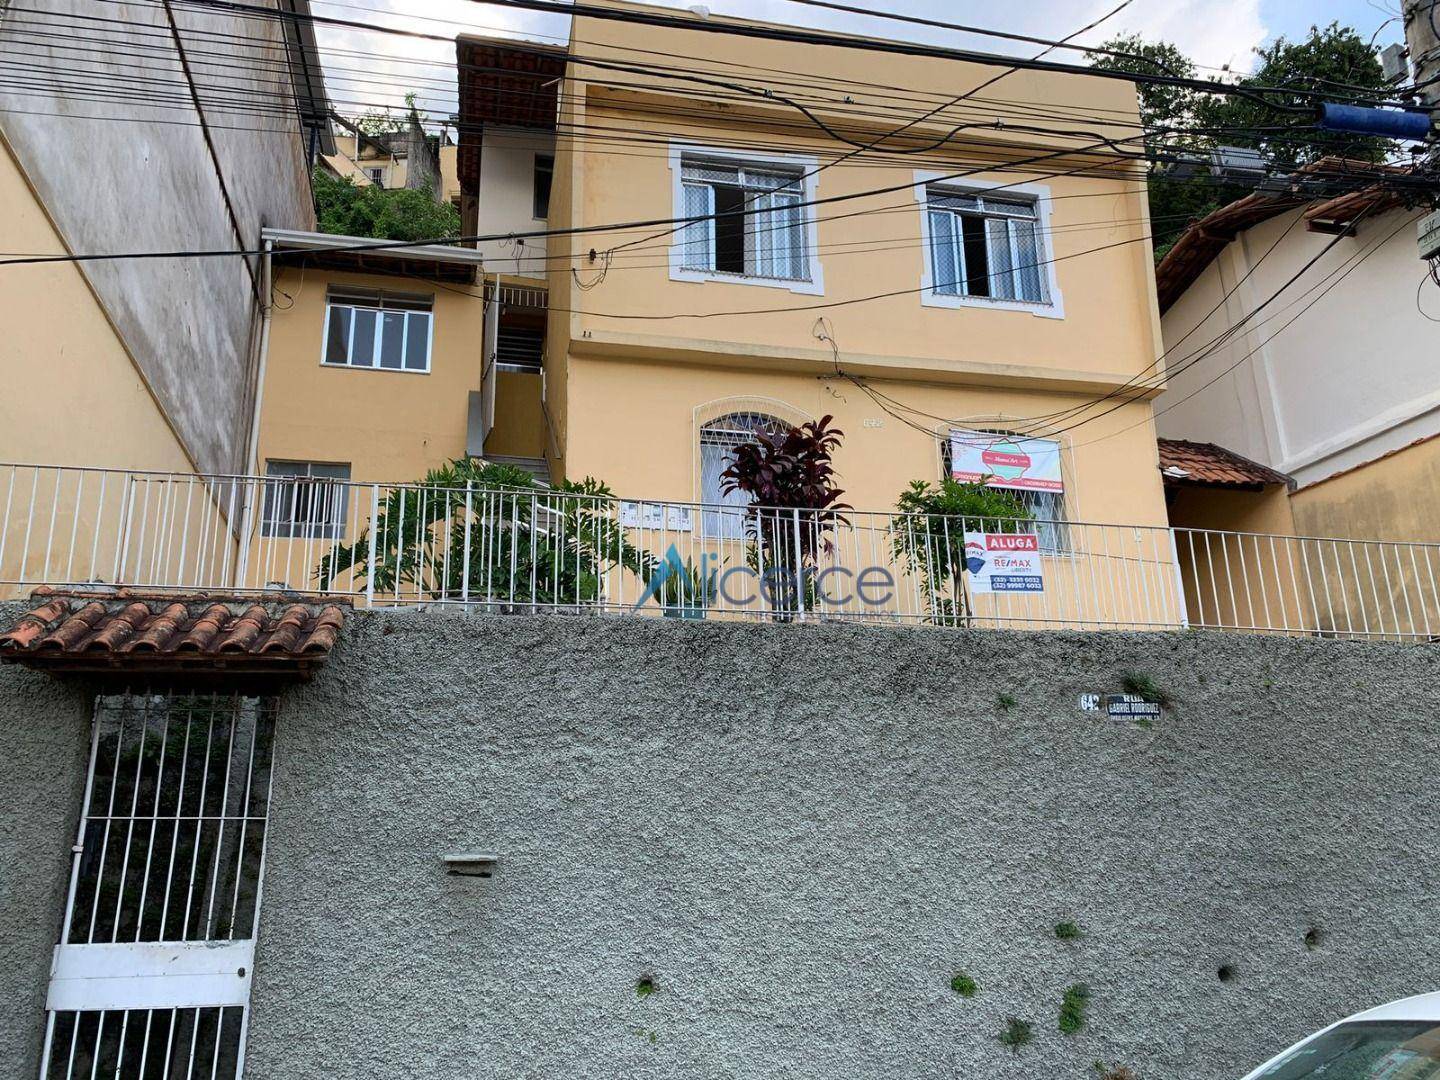 Sobrado com 2 dormitórios para alugar, 55 m² por R$ 800,00/mês - Santa Cecília - Juiz de Fora/MG